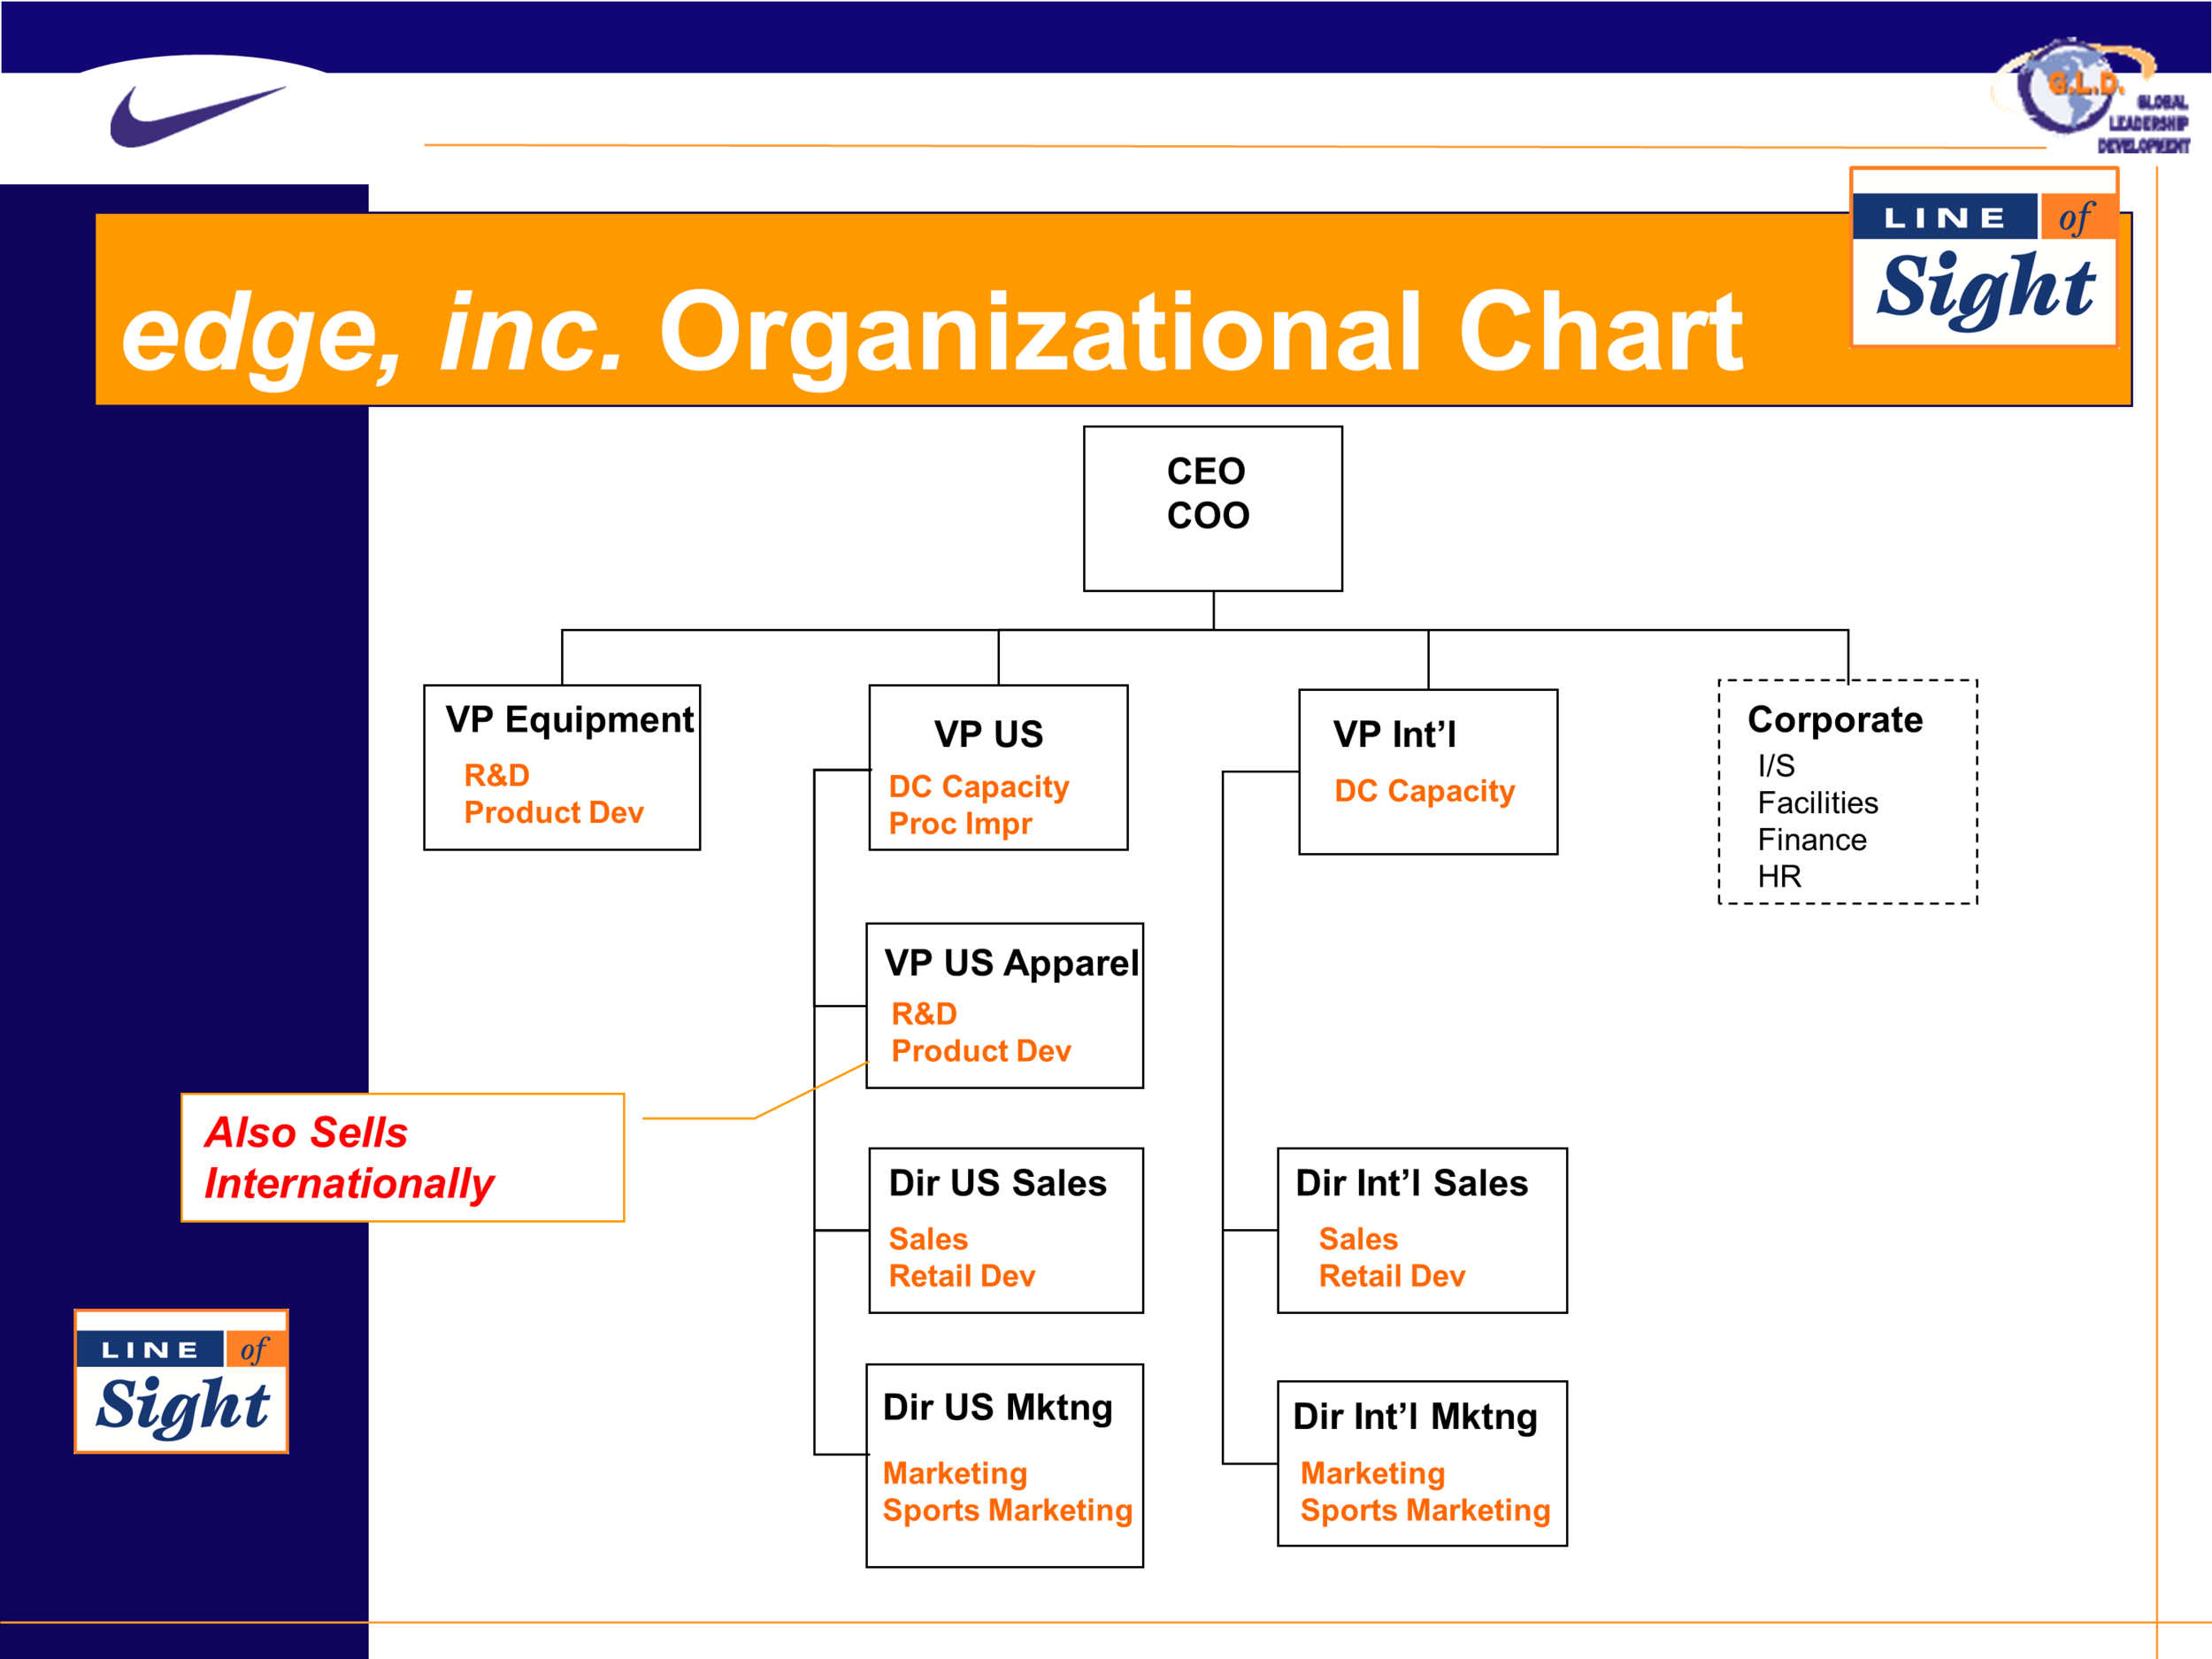 nike organizational chart 2018